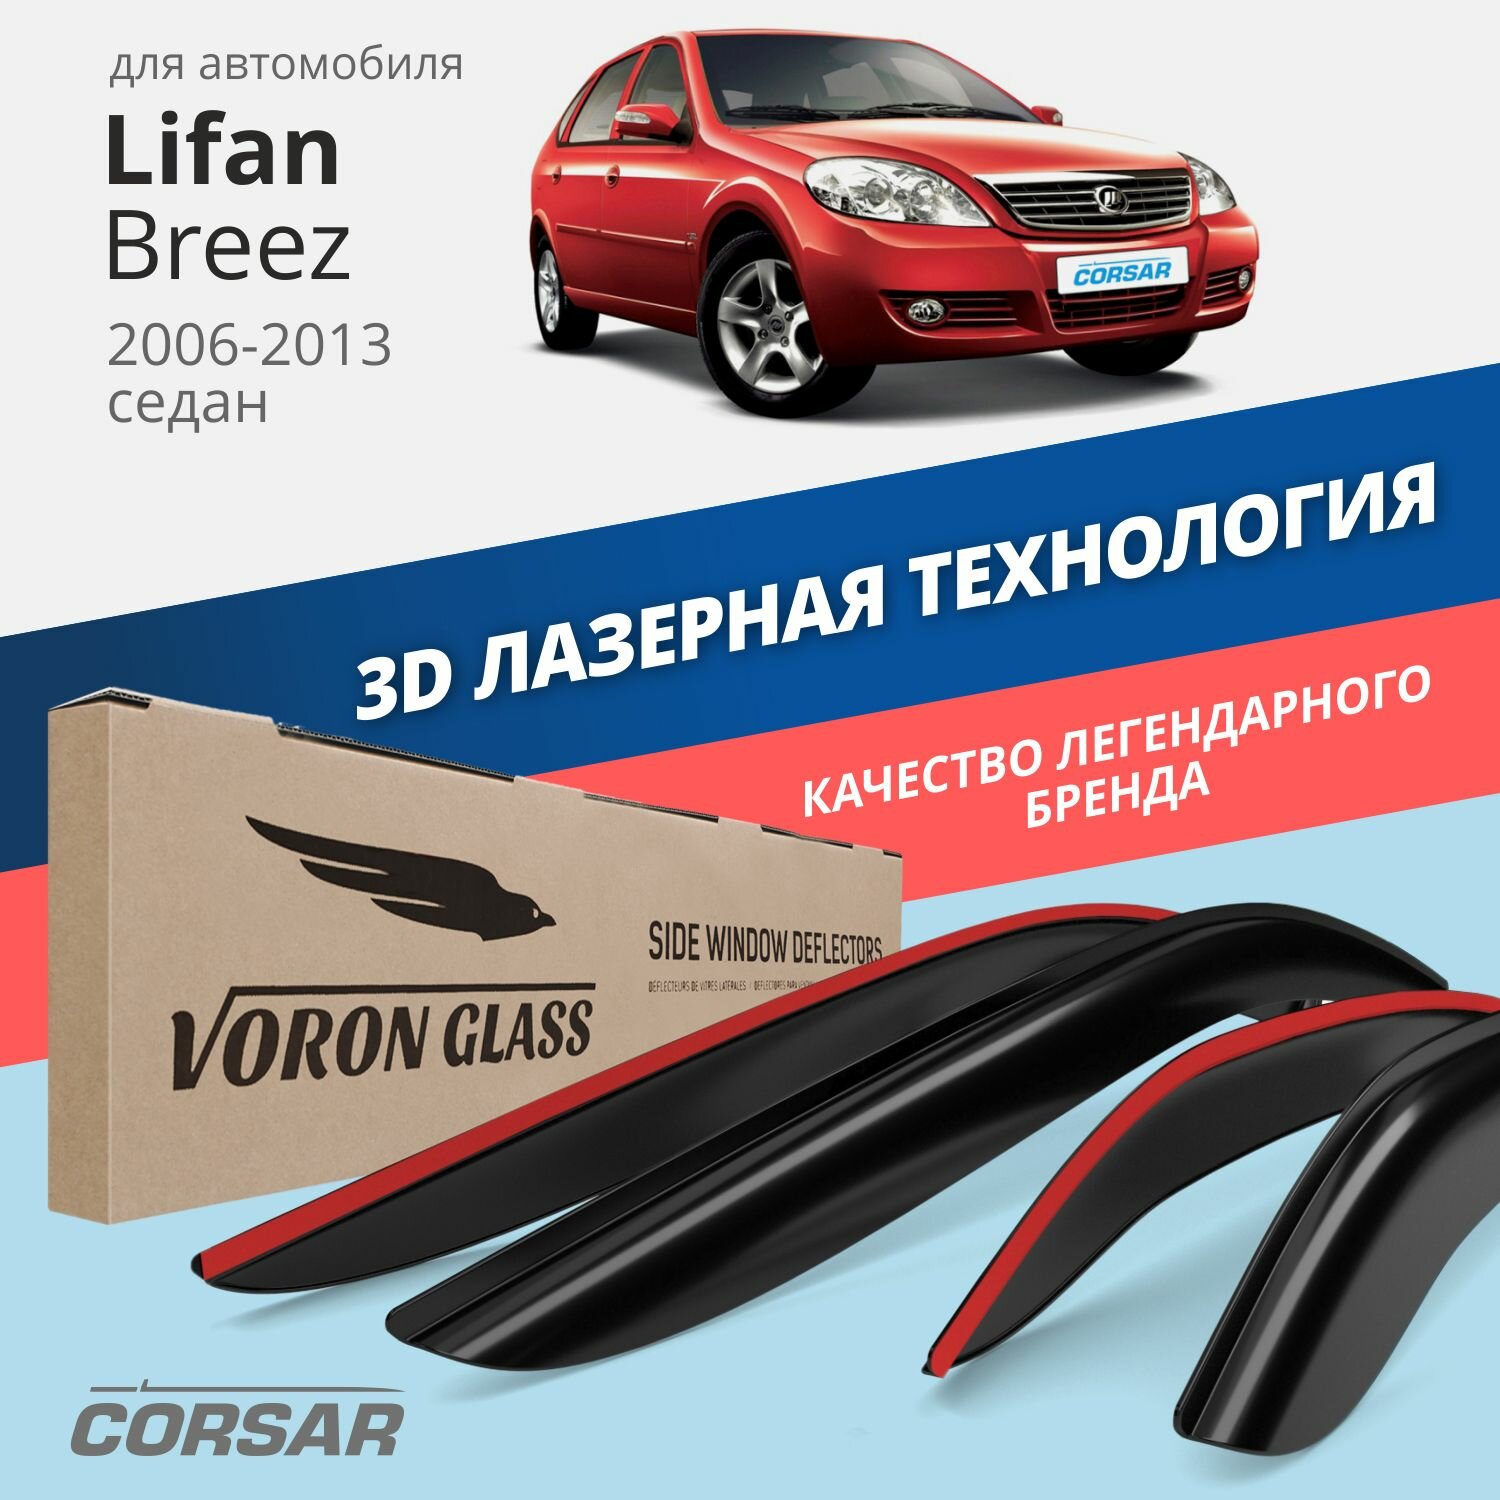 Дефлекторы окон Voron Glass серия Corsar для автомобиля Lifan Breez 2006-2013 накладные 4 шт.